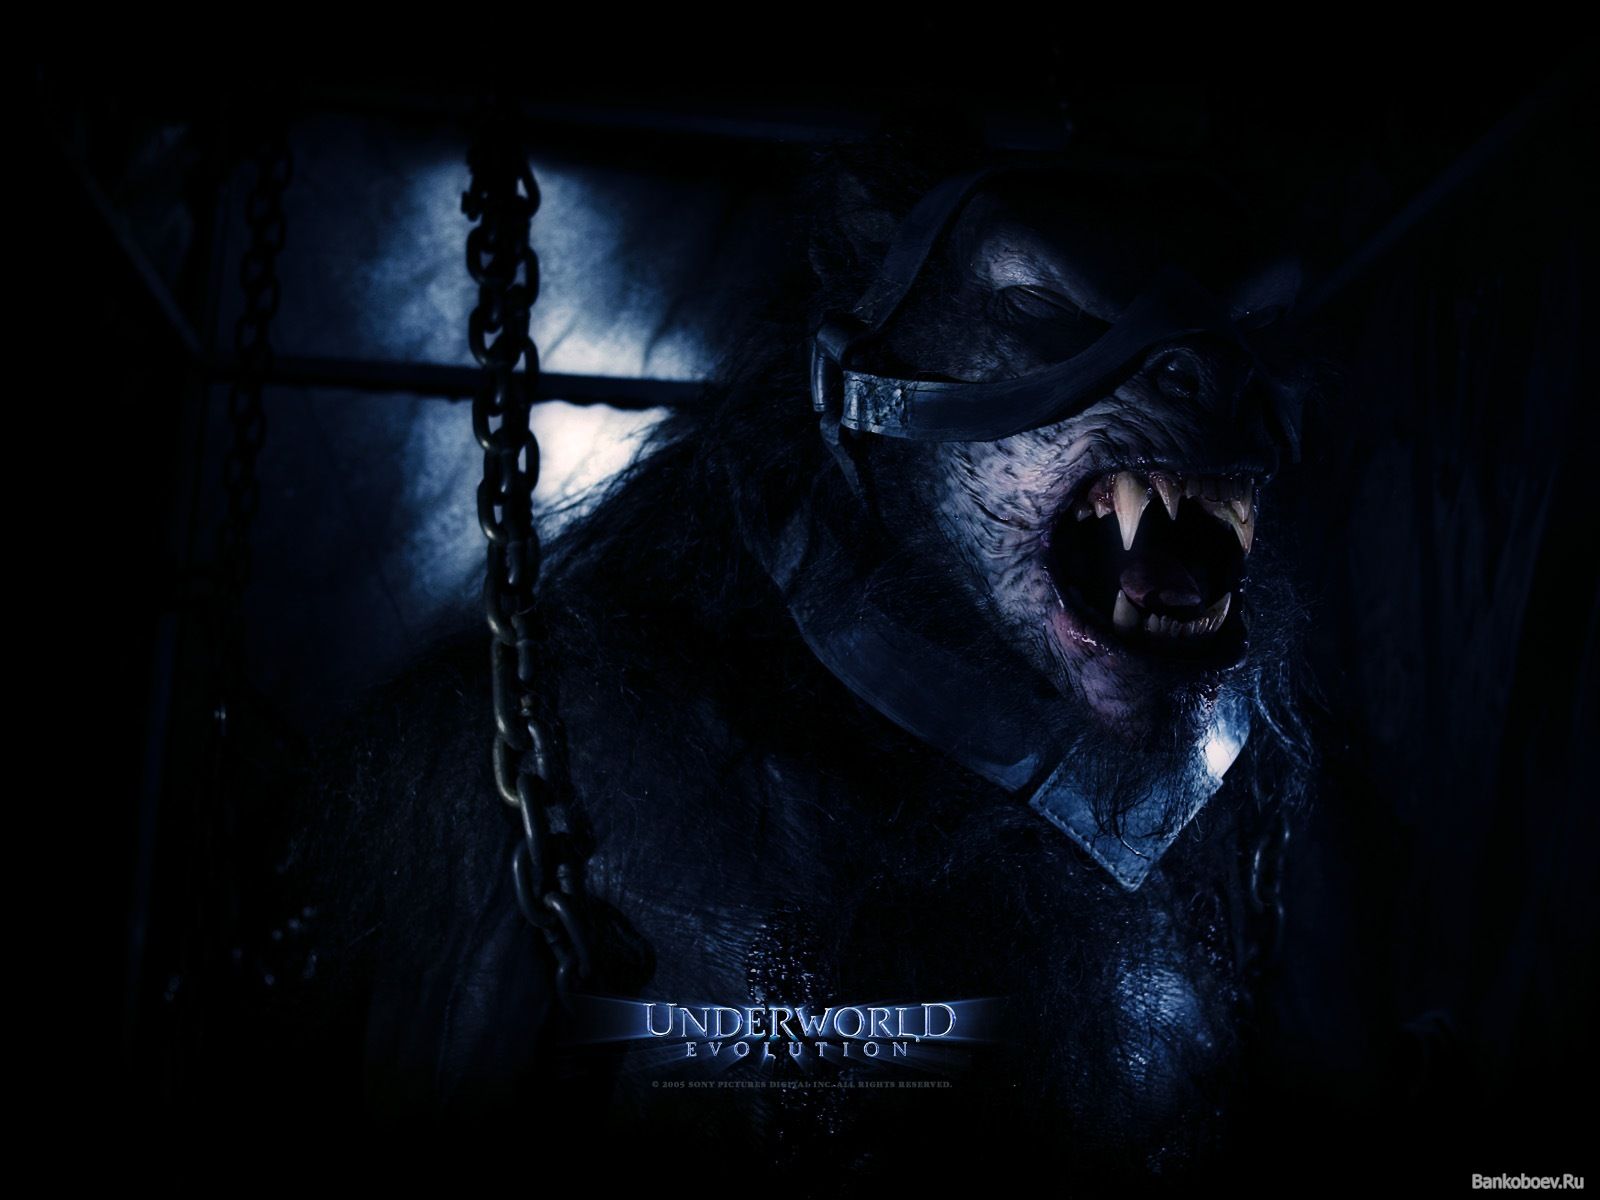 Underworld Werewolf Wallpaper Image Pictures Becuo